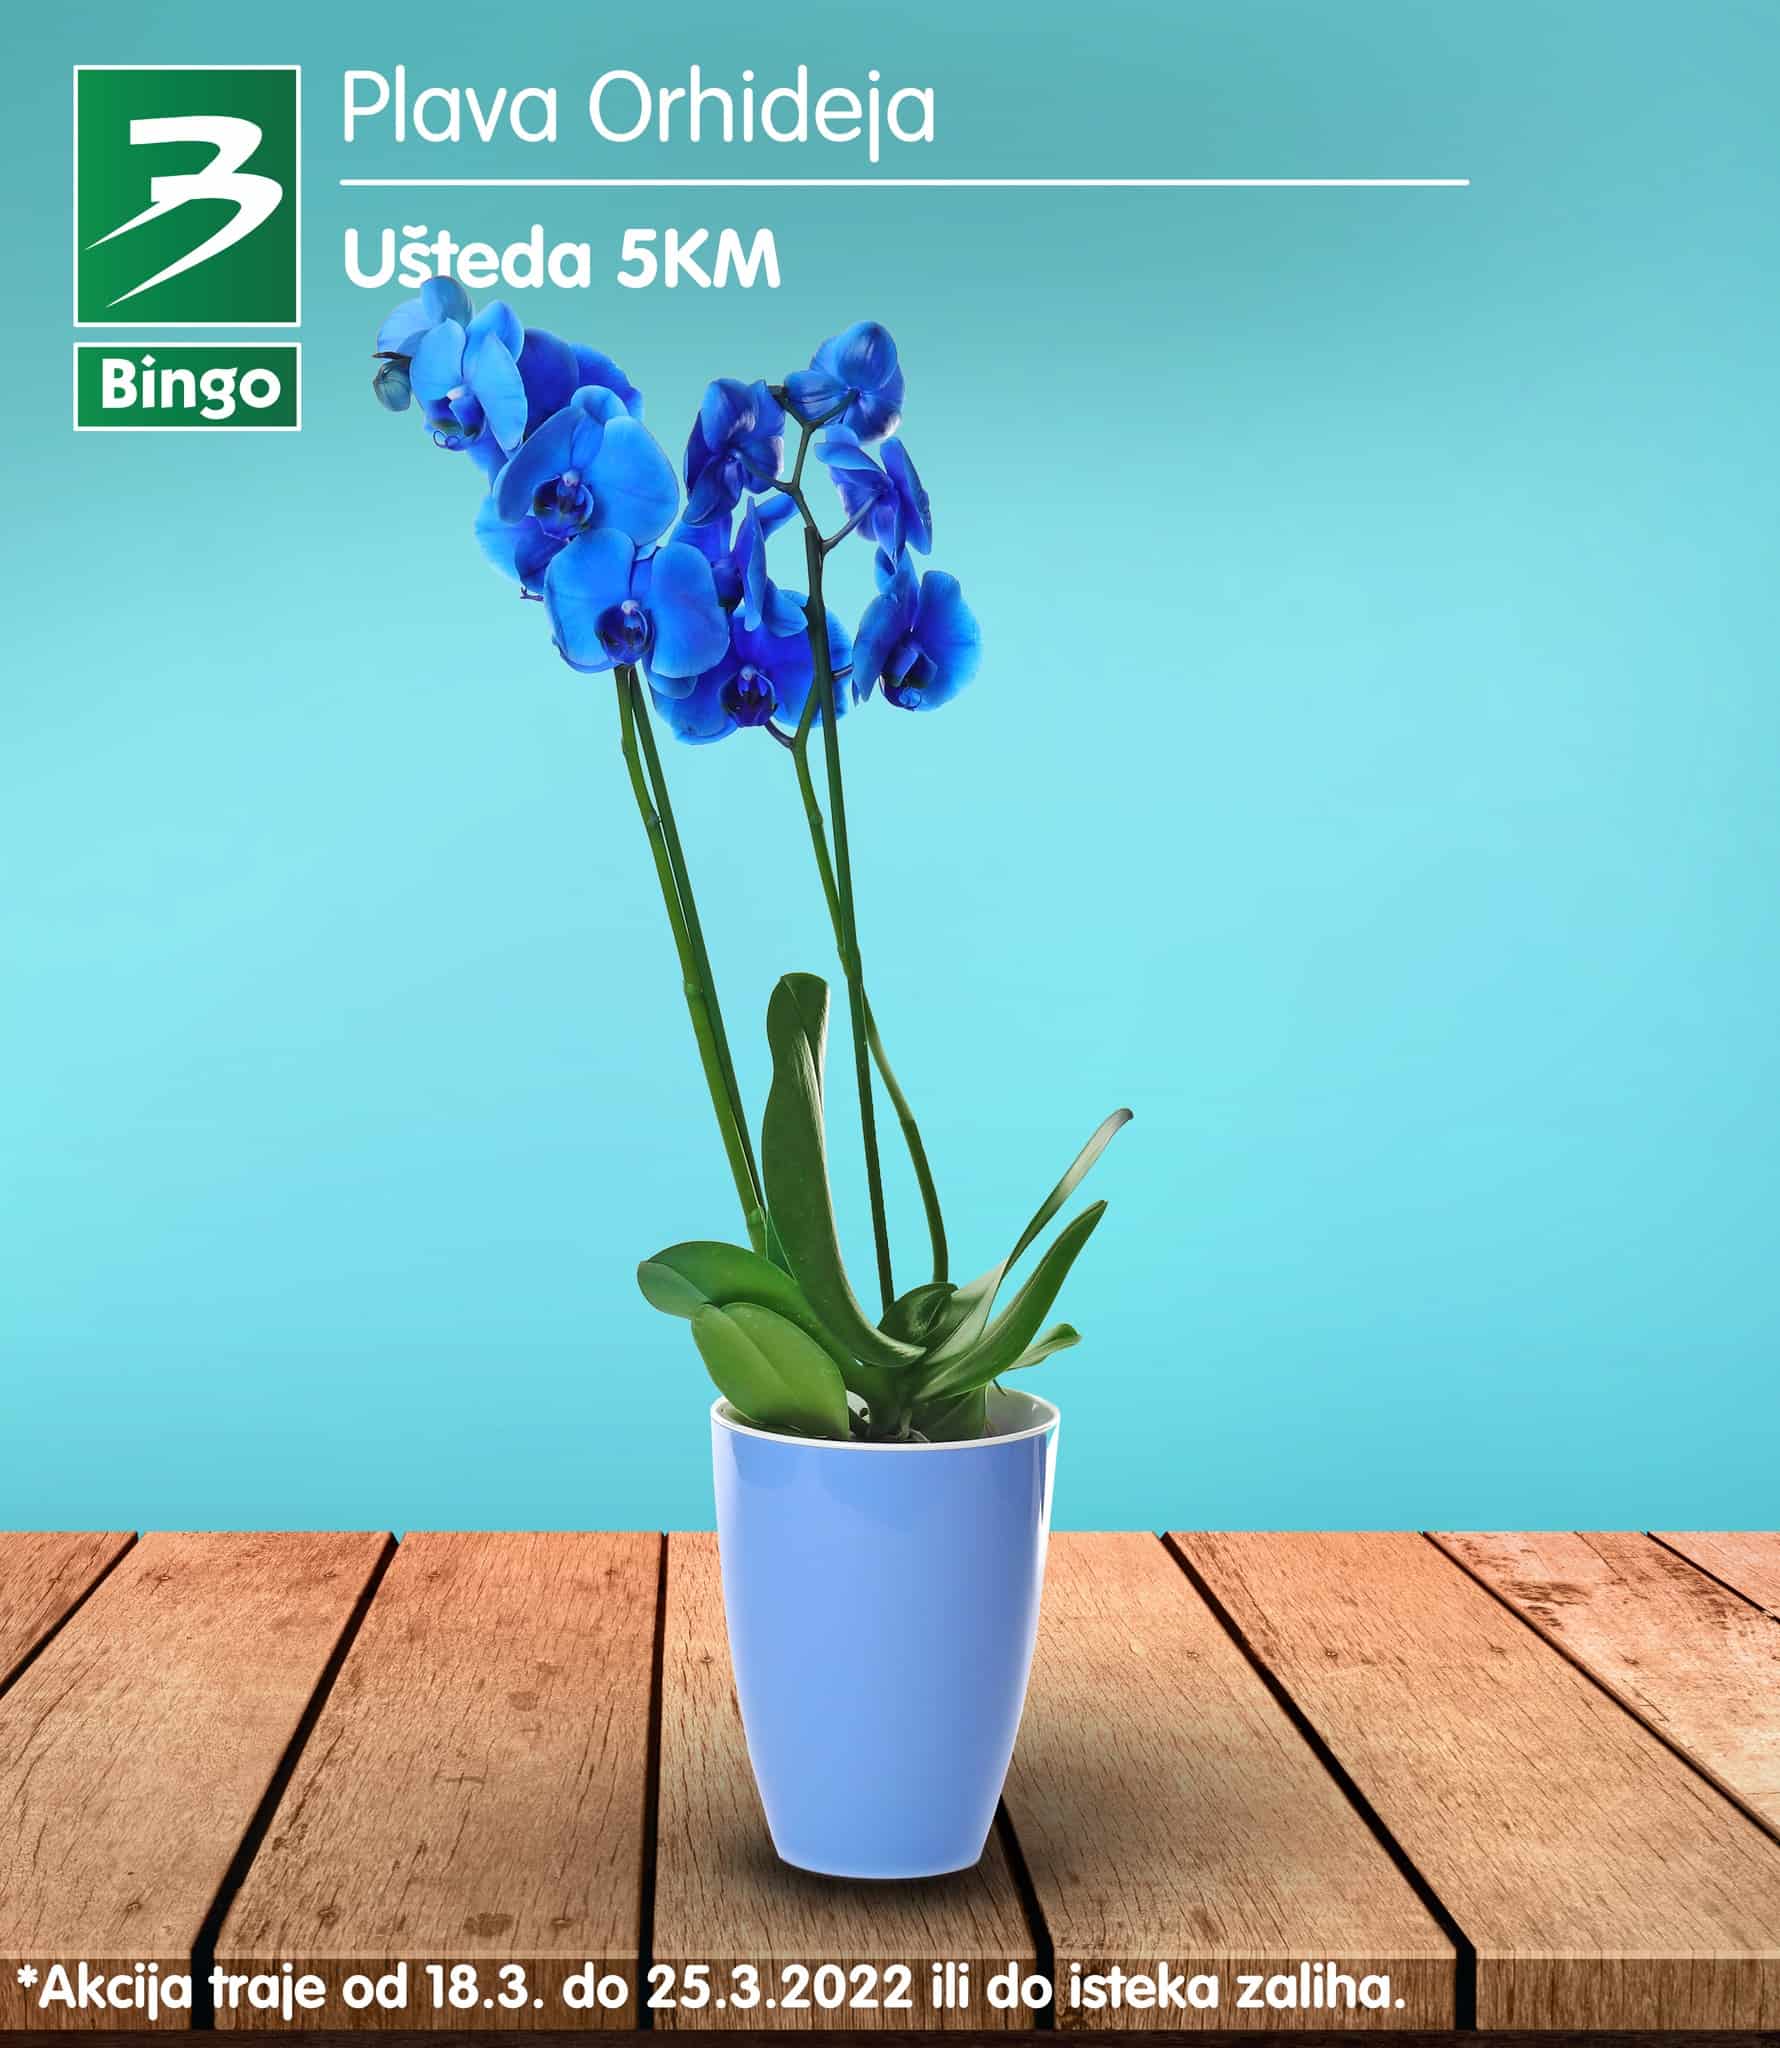 Bing katalog donosi nam ukrasn cvijeće već od 5,95 KM!